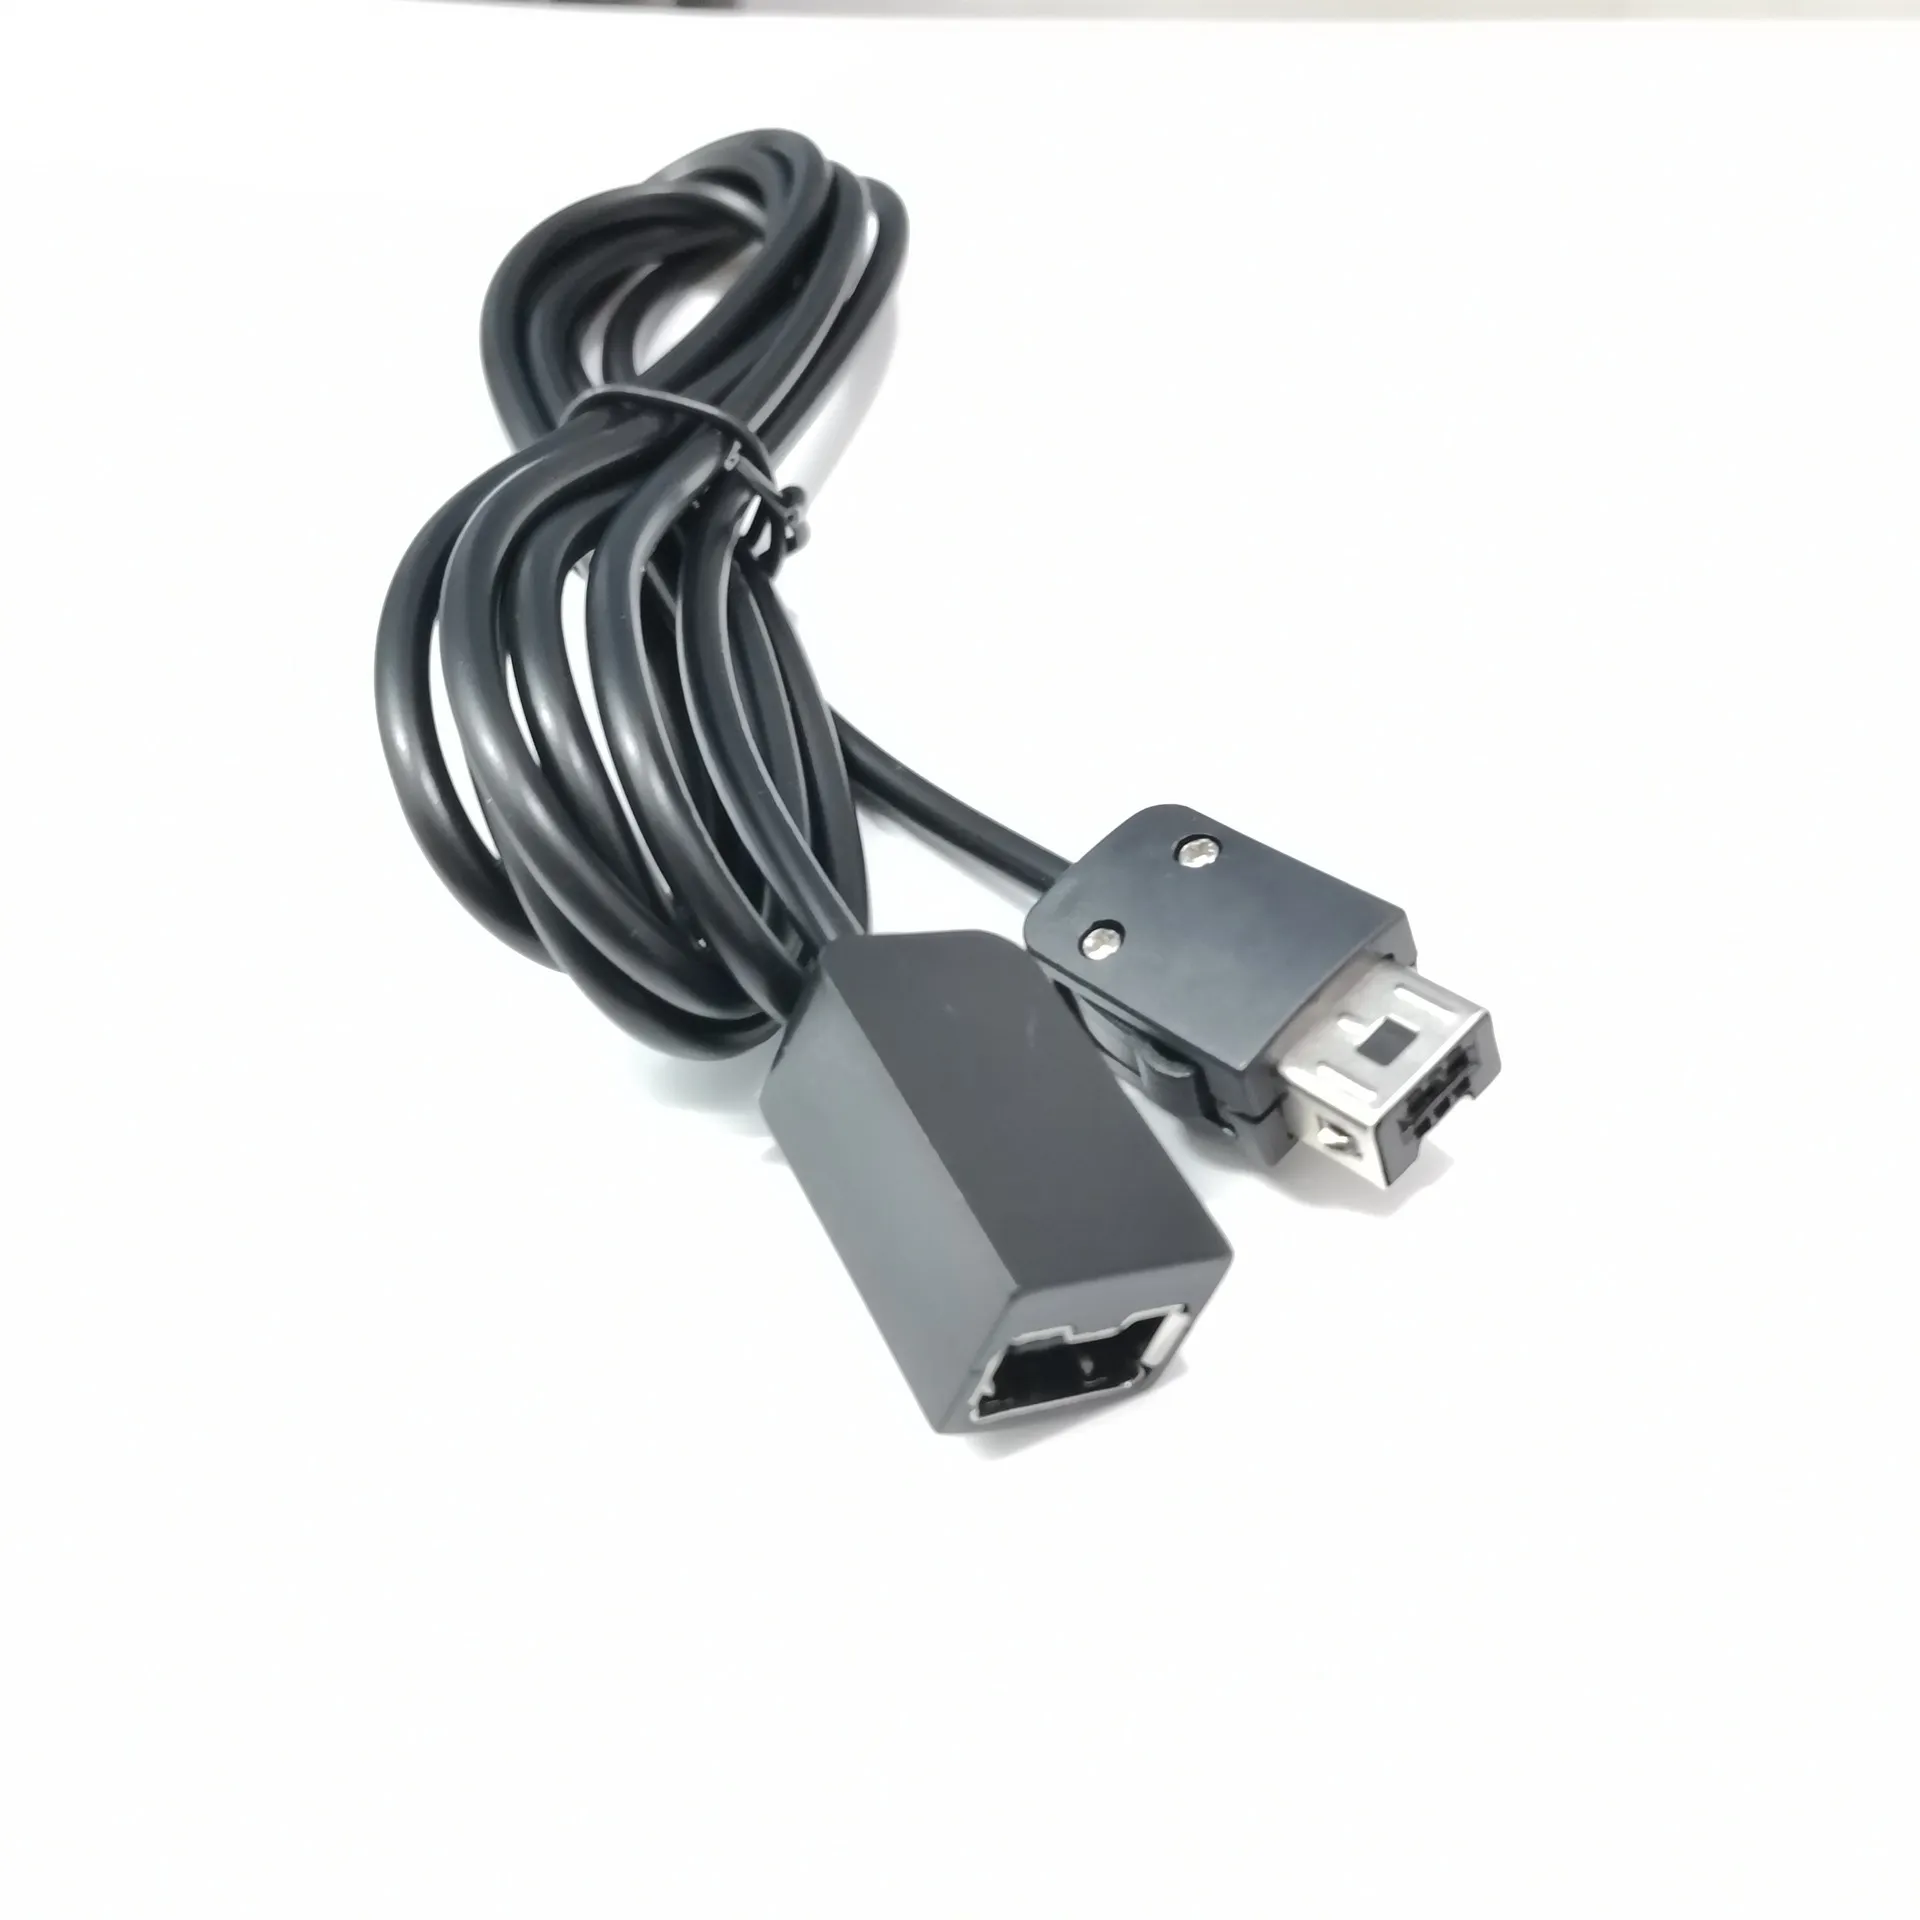 Nouveau câble d'extension de 1,8 m / 6ft pour 2017 Nintendo SNES Classic Mini Console pour NES Wii Contrôleur accessoires de jeu Cables